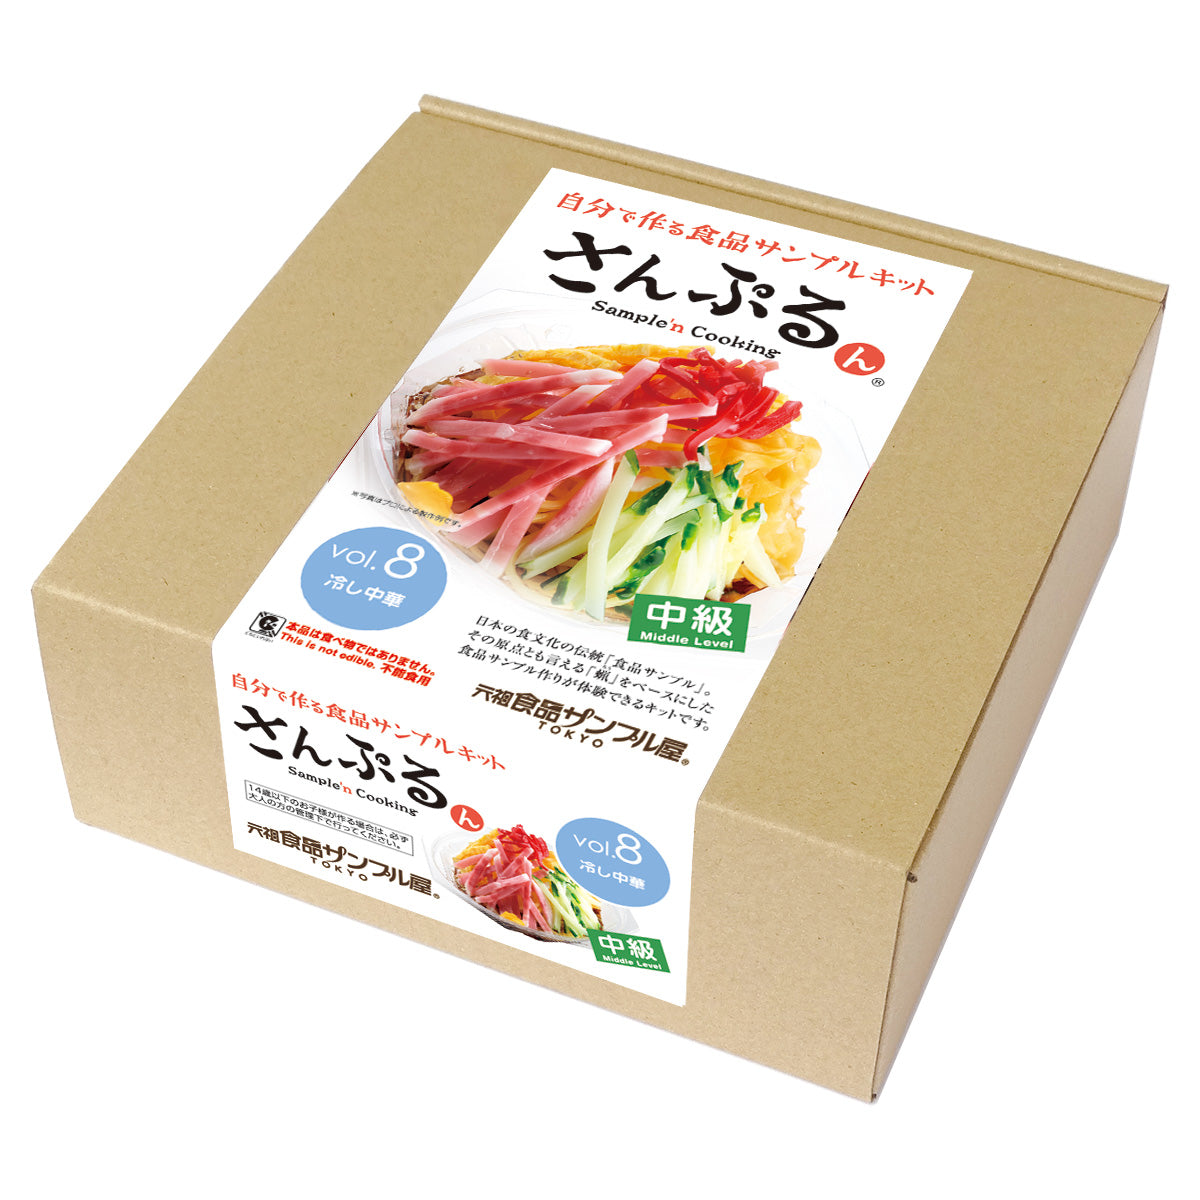 自分でつくる食品サンプル製作キット「さんぷるんvol.8 冷やし中華」のパッケージ画像です。